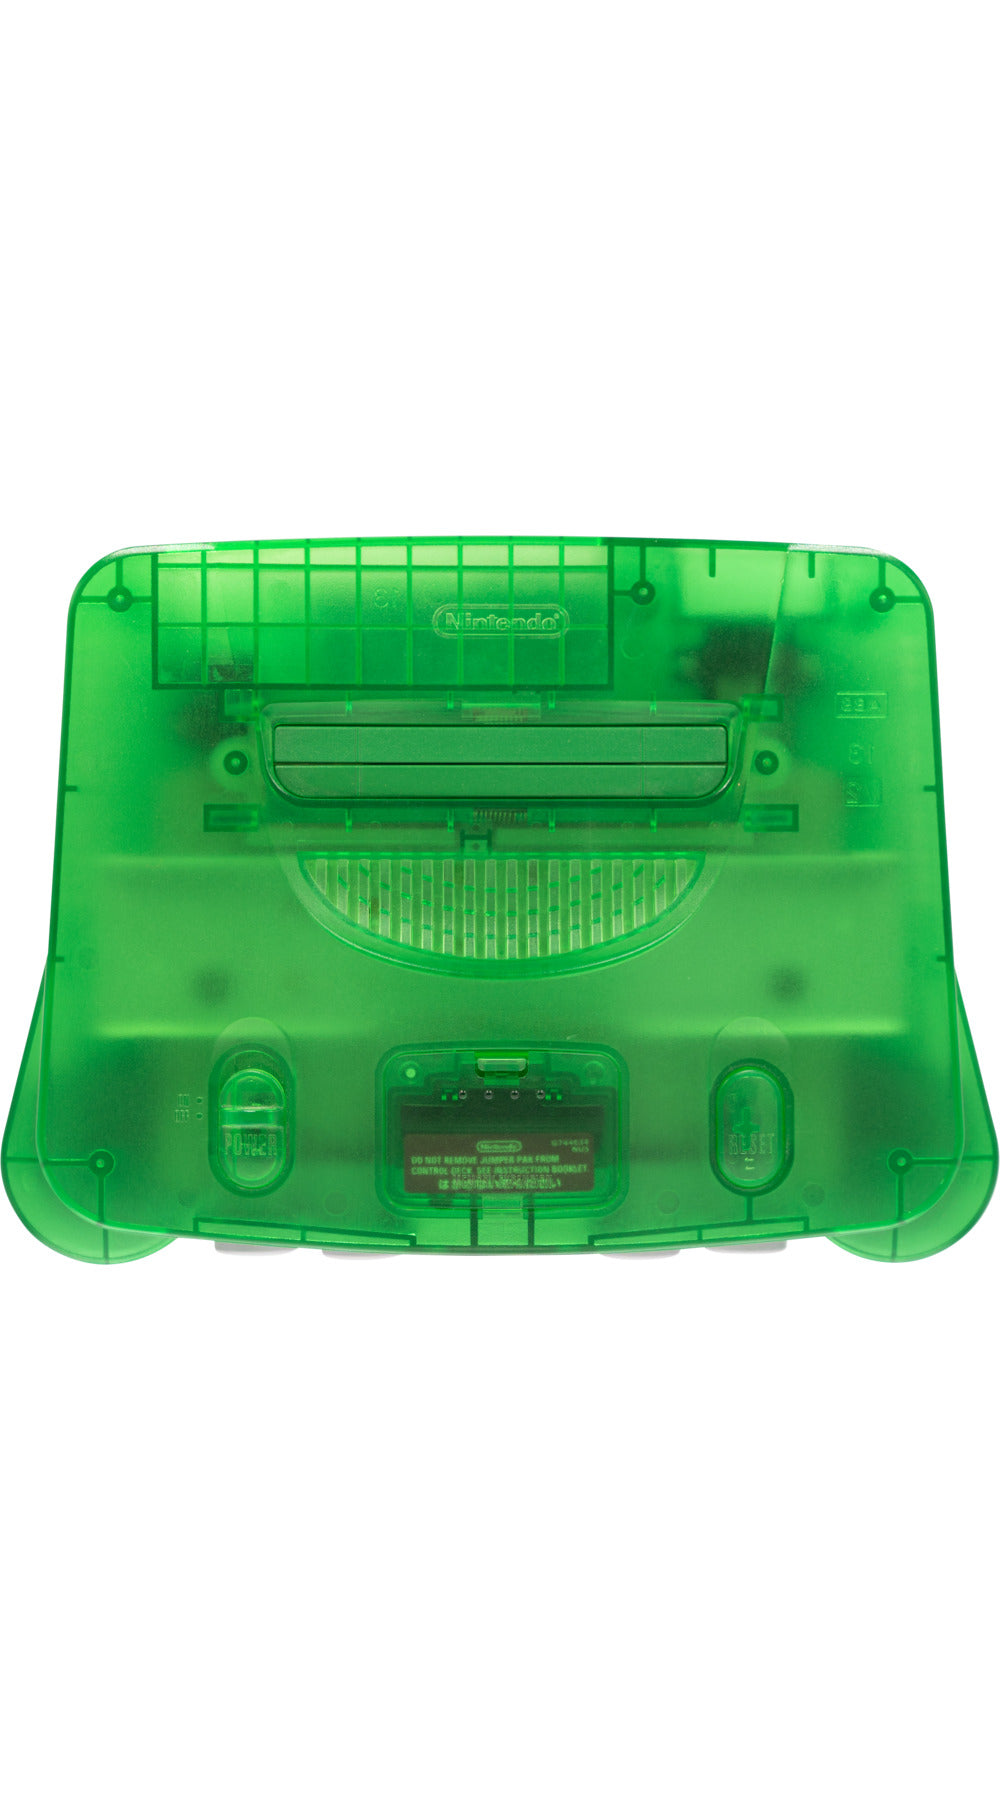 nintendo 64 green console